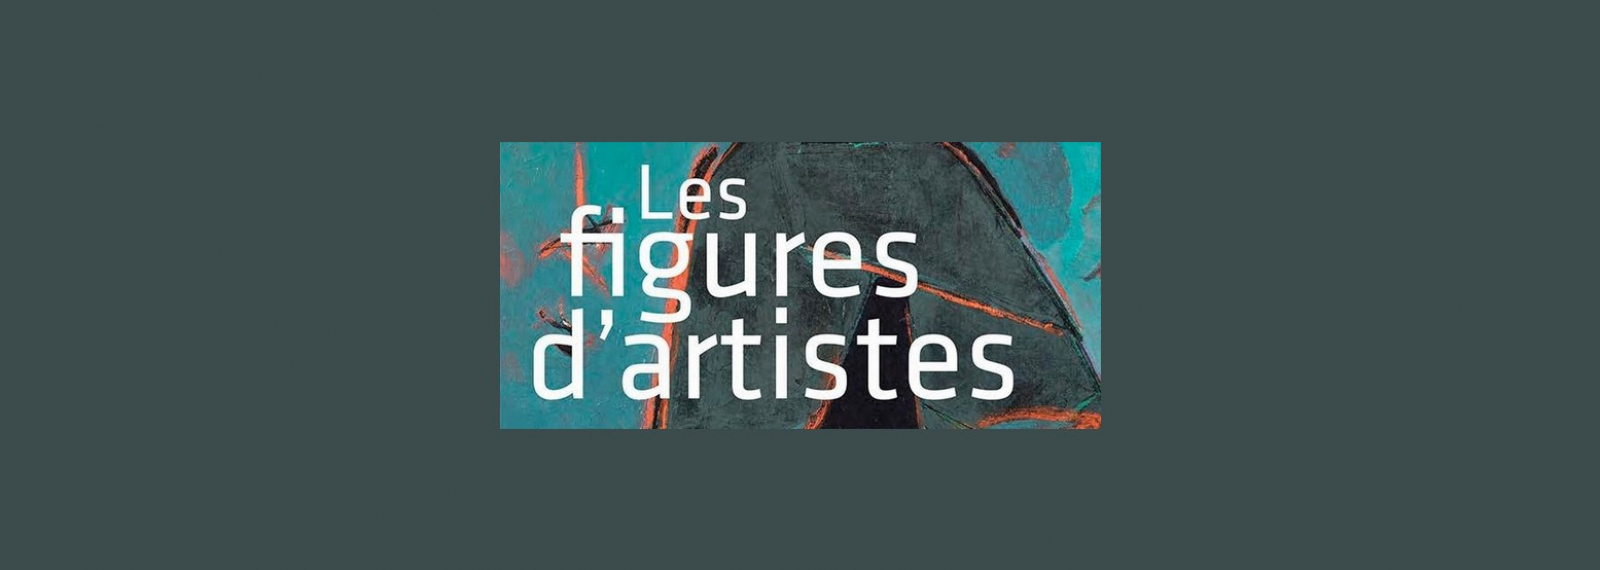 Exhibition Les Figures d'Artistes at the Estrine Museum